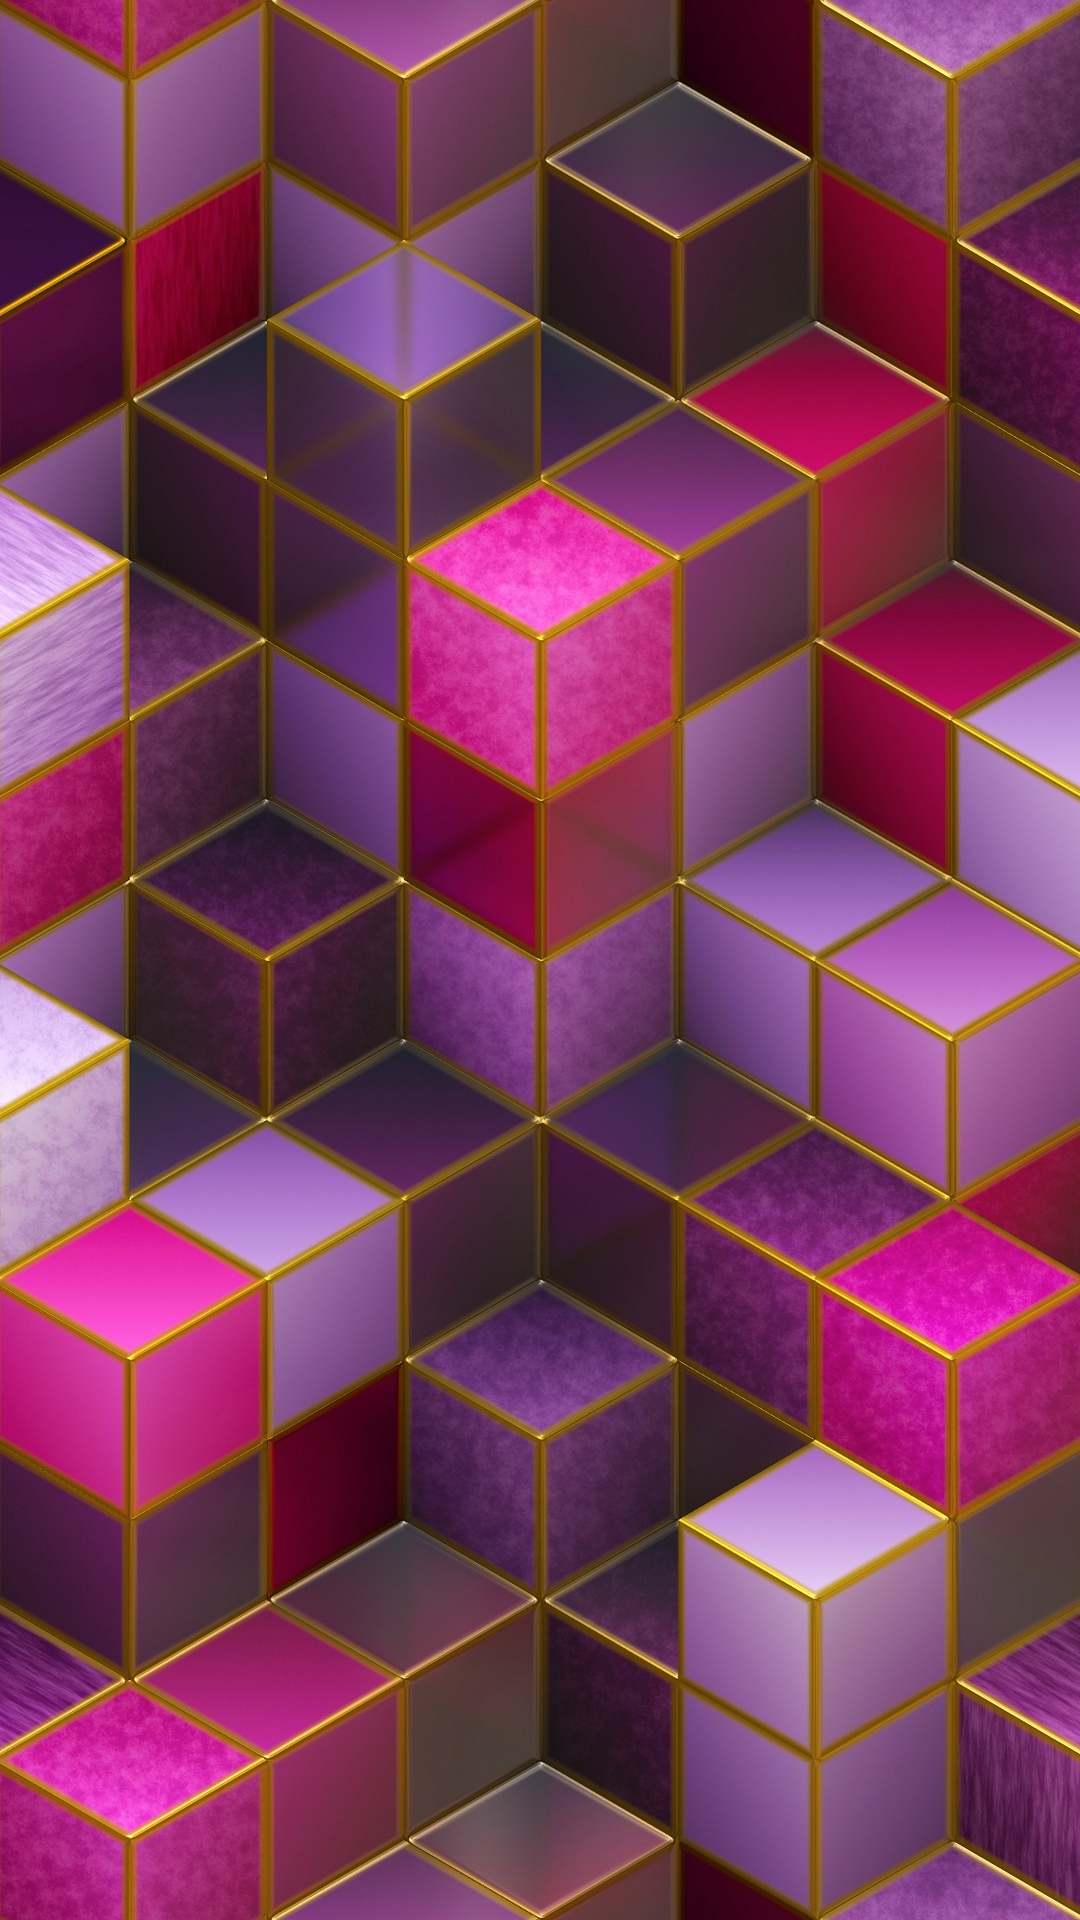 Khám phá nền tảng hình nền màn hình 3D đầy màu sắc và đậm chất nữ tính với bộ sưu tập Pink 3D Wallpaper. Hình nền HD sẽ khiến bạn say đắm với các khối cube màu sắc đa dạng, mang tới một thiên đường 3D tràn ngập nét đẹp tinh tế. Hãy tải ngay để khoác lên màn hình điện thoại của bạn vẻ đẹp ngọt ngào và độc đáo.